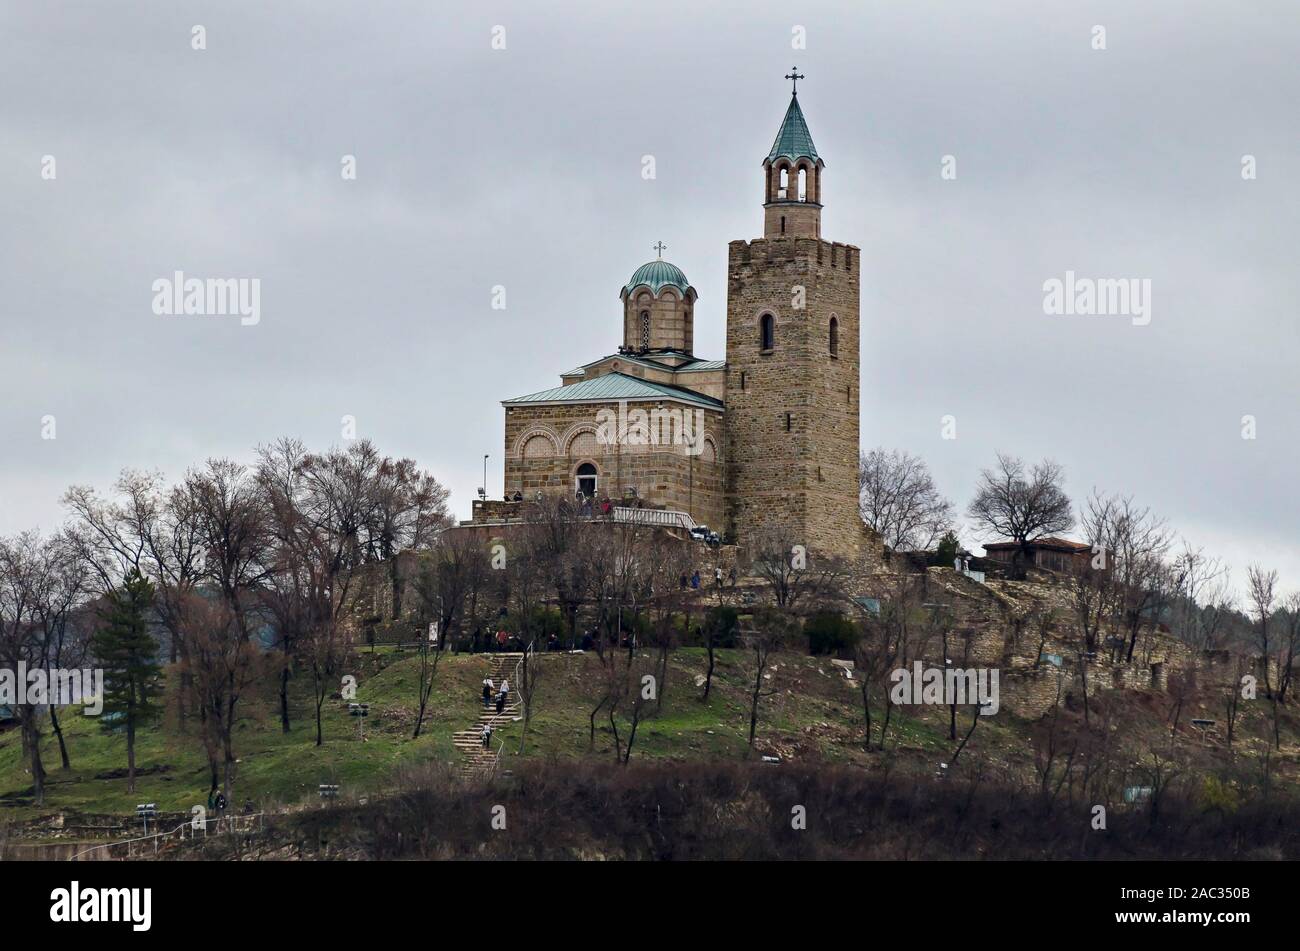 La forteresse de tsarevets est une forteresse médiévale située sur une colline avec le même nom dans la région de Veliko Tarnovo, l'ancienne capitale de la Bulgarie, de l'Europe Banque D'Images